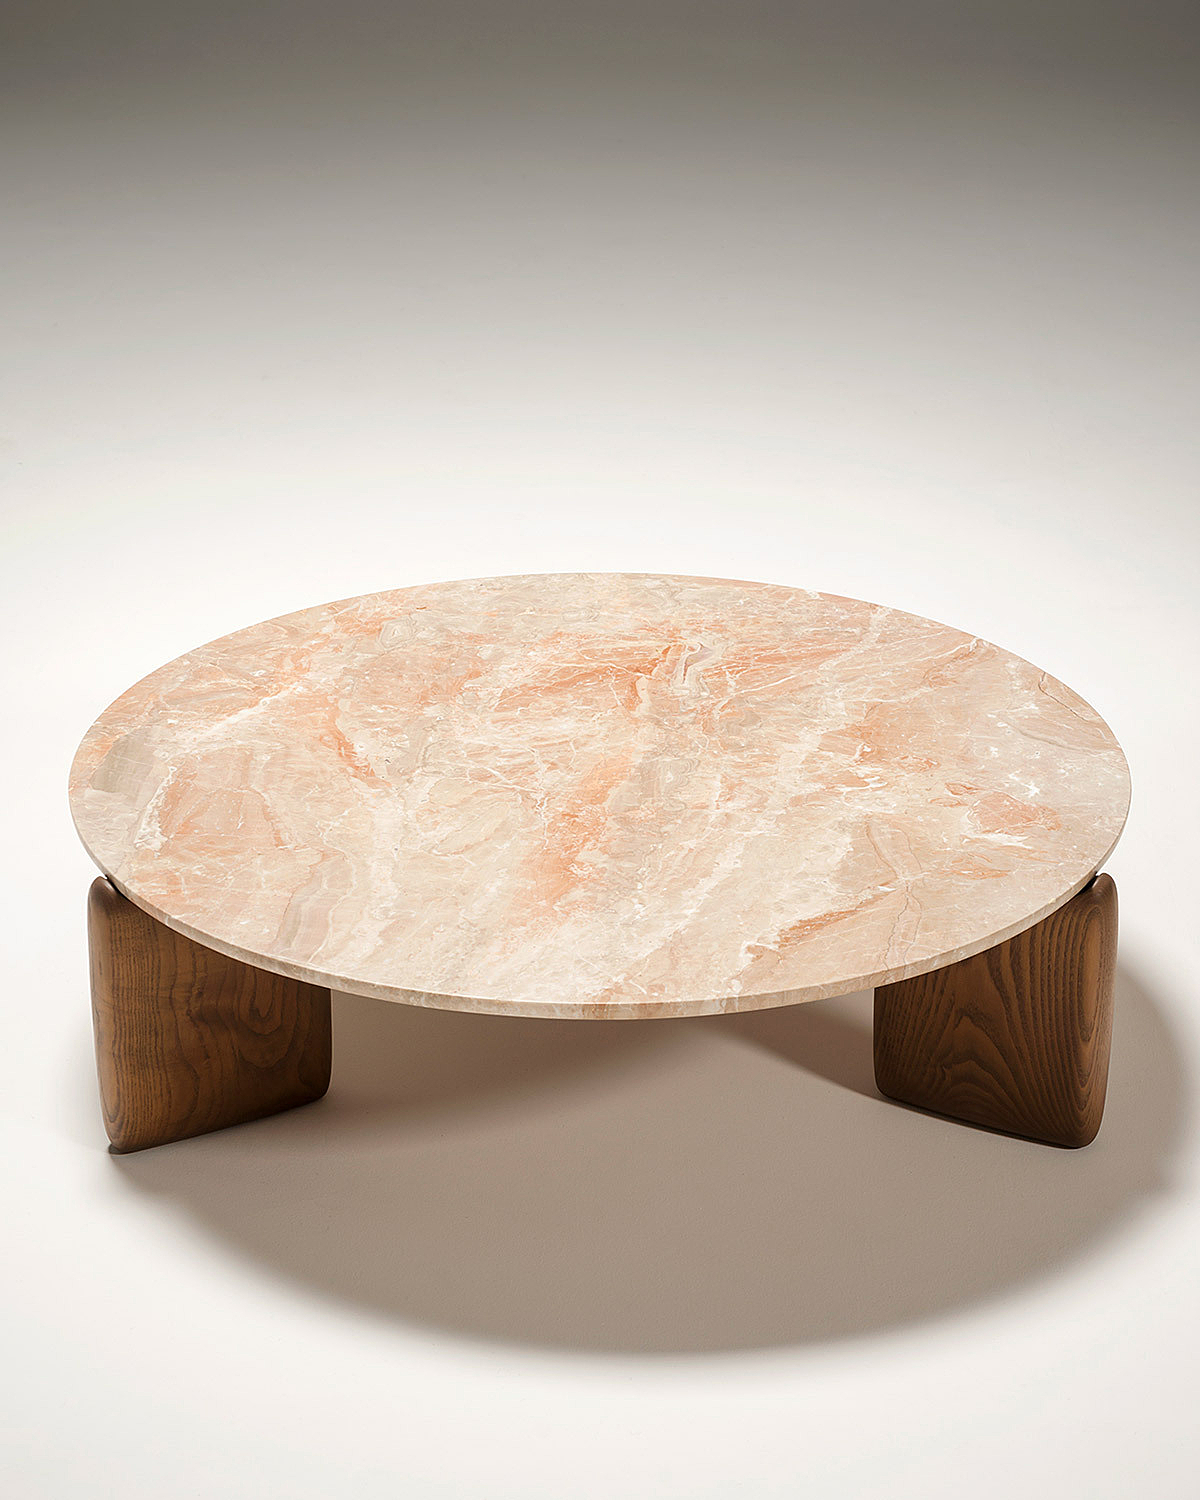 De Kanji, een salontafel in marmer uit de Tacchini collectie